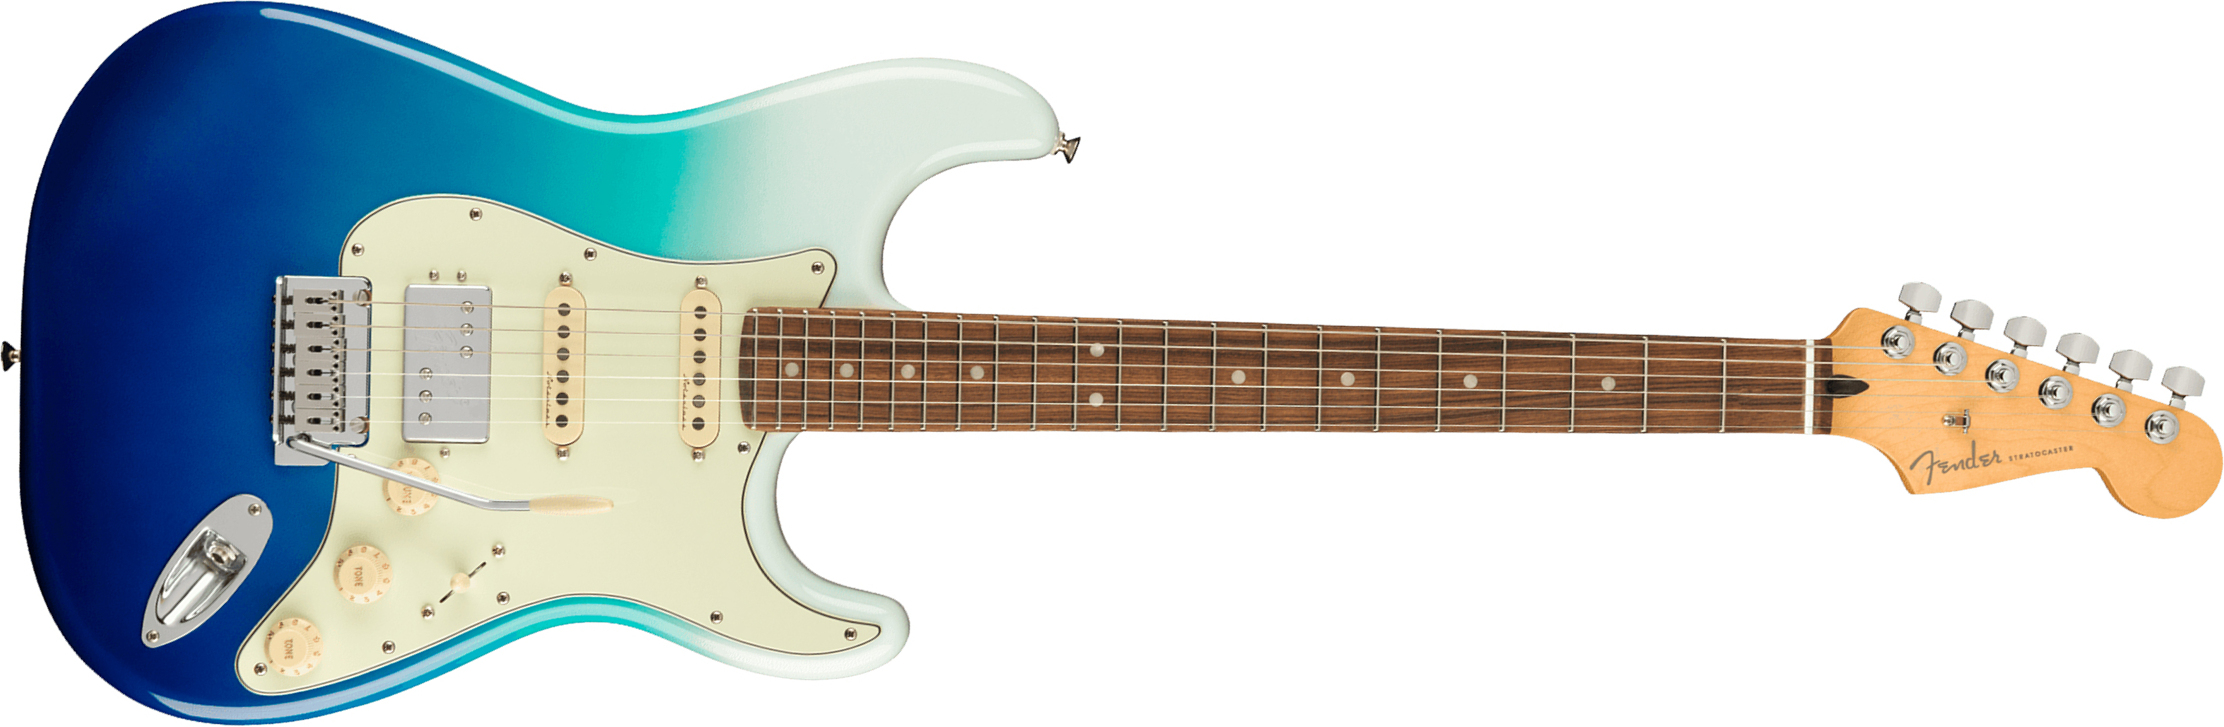 Fender Strat Player Plus Mex Hss Trem Pf - Belair Blue - Elektrische gitaar in Str-vorm - Main picture